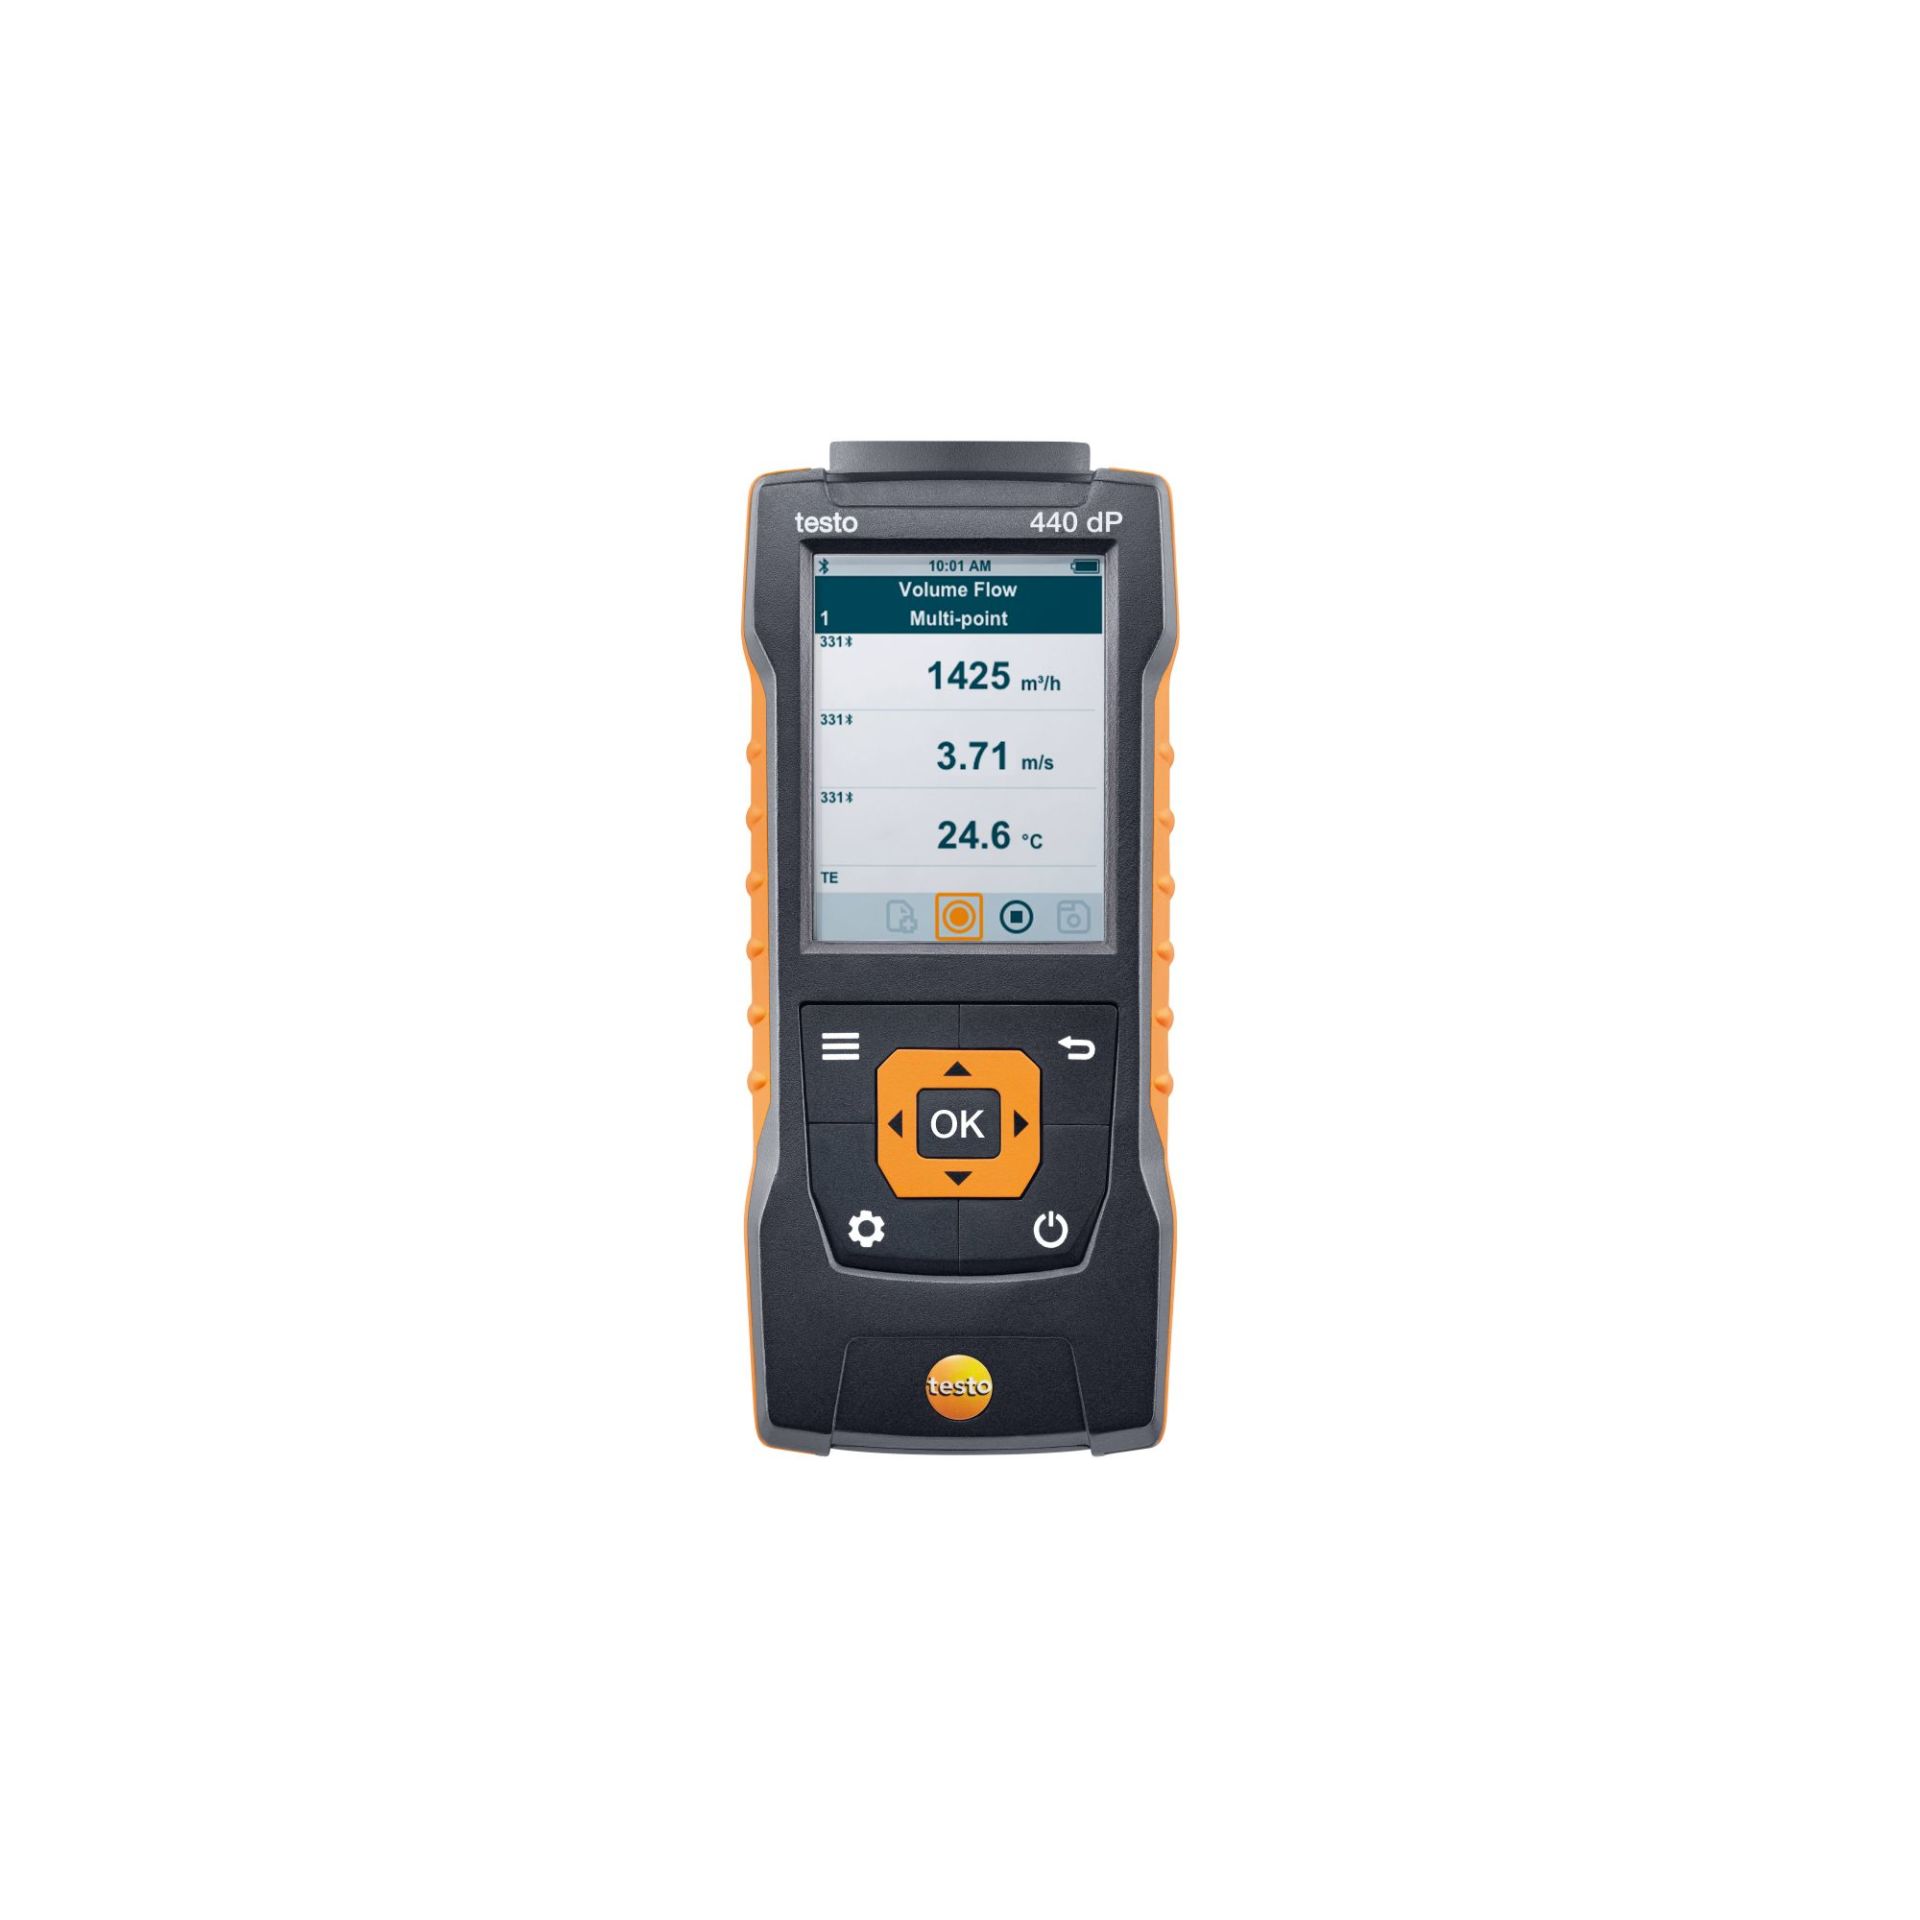 Testo 440 dP - Fark basınç sensörü içeren hava hızı ve iç hava kalitesi ölçüm cihazı